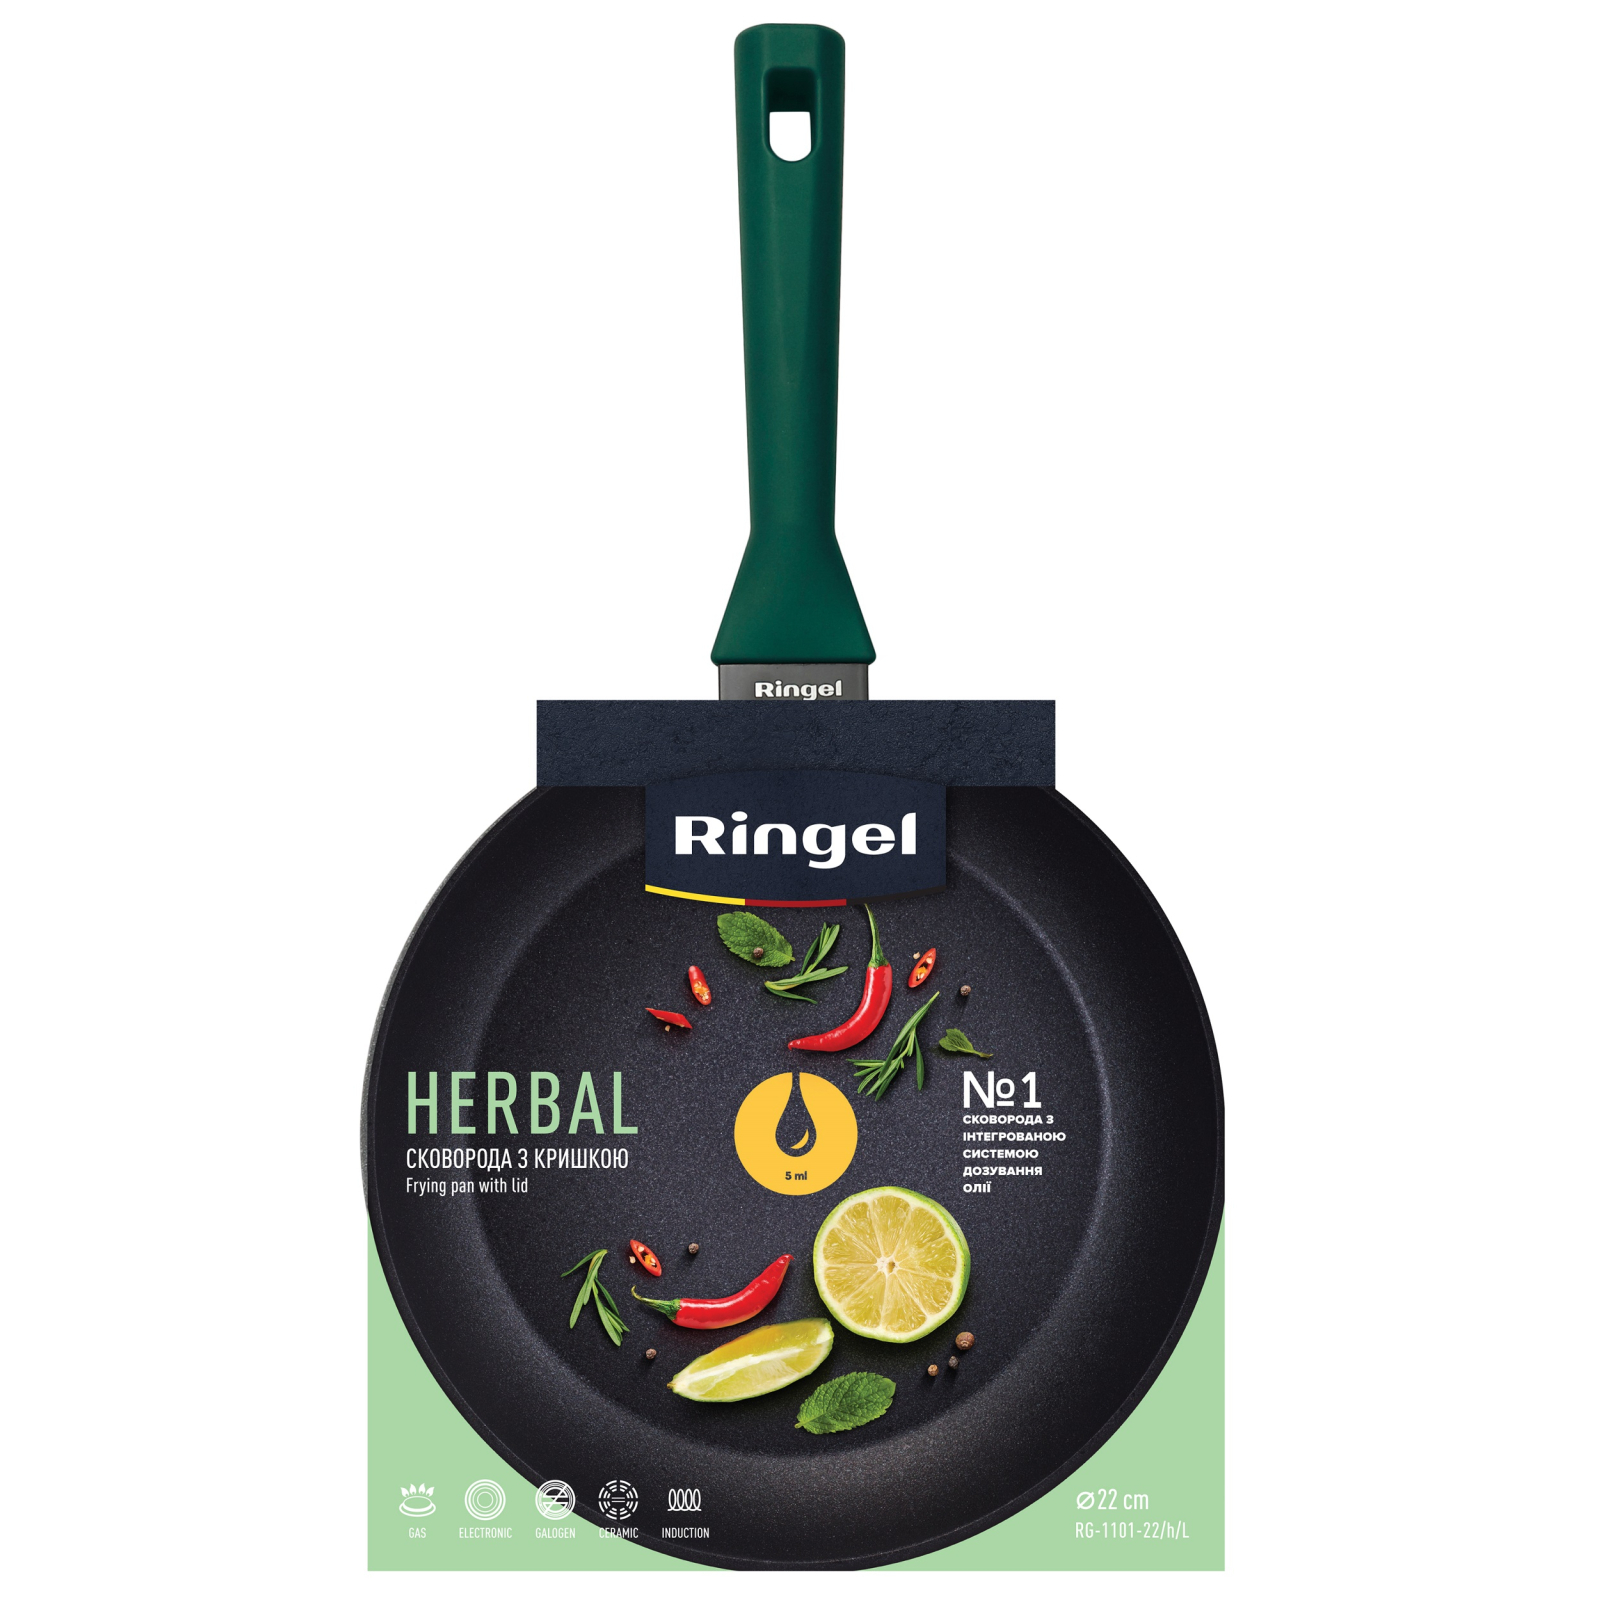 Сковорода Ringel Herbal 22 см (RG-1101-22/h/L) изображение 2